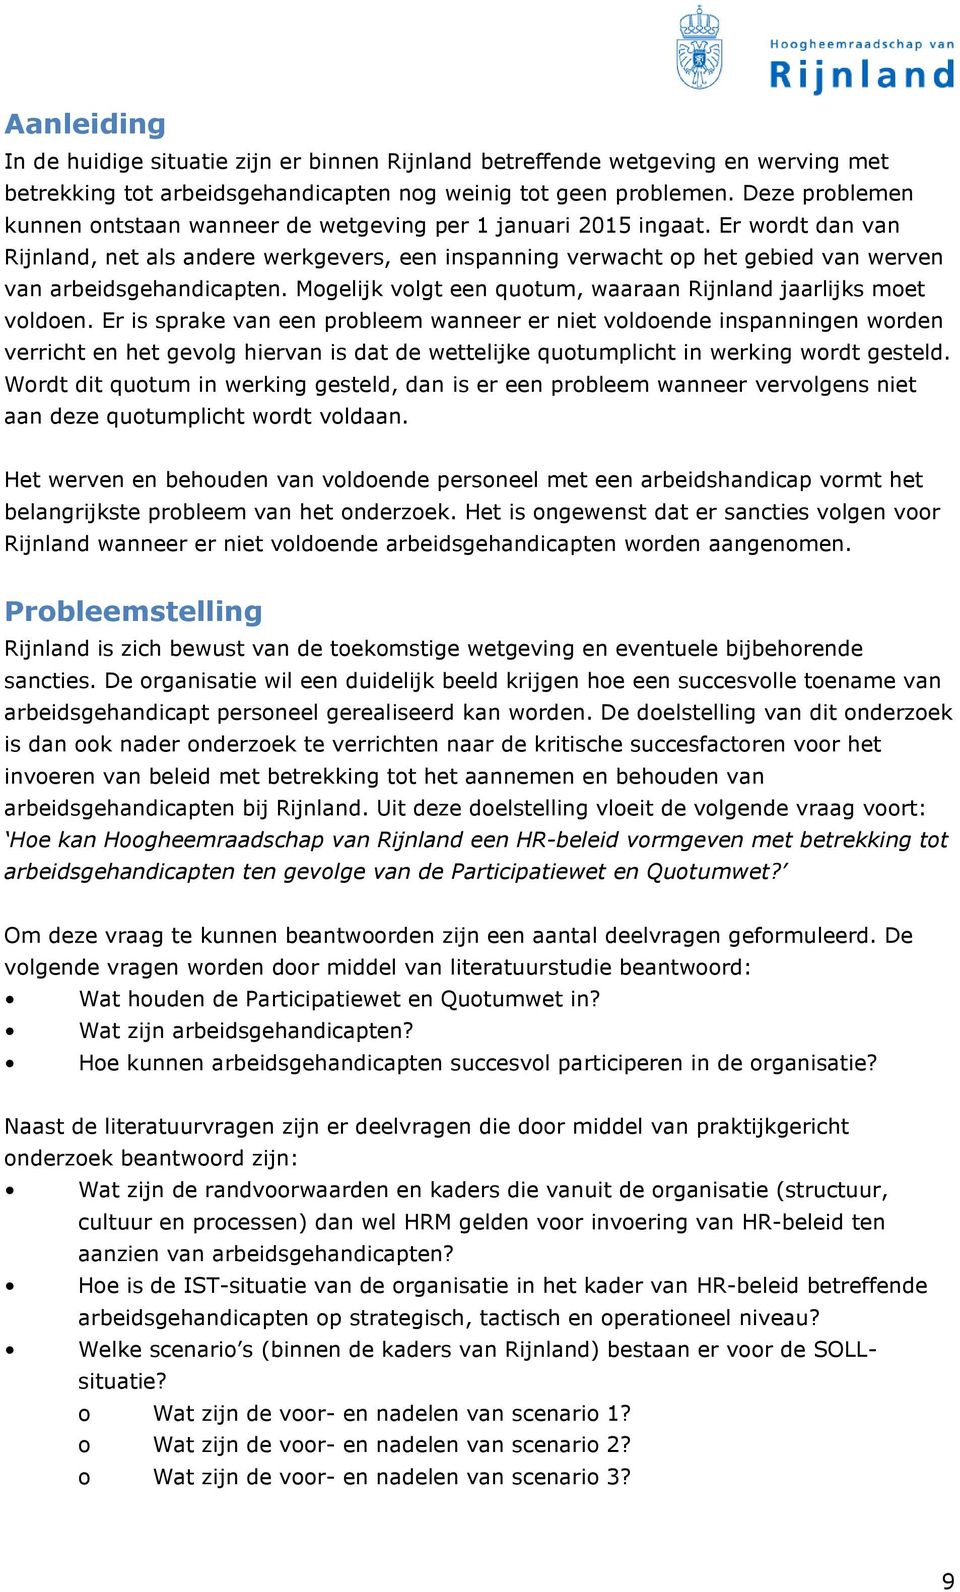 Er wordt dan van Rijnland, net als andere werkgevers, een inspanning verwacht op het gebied van werven van arbeidsgehandicapten. Mogelijk volgt een quotum, waaraan Rijnland jaarlijks moet voldoen.